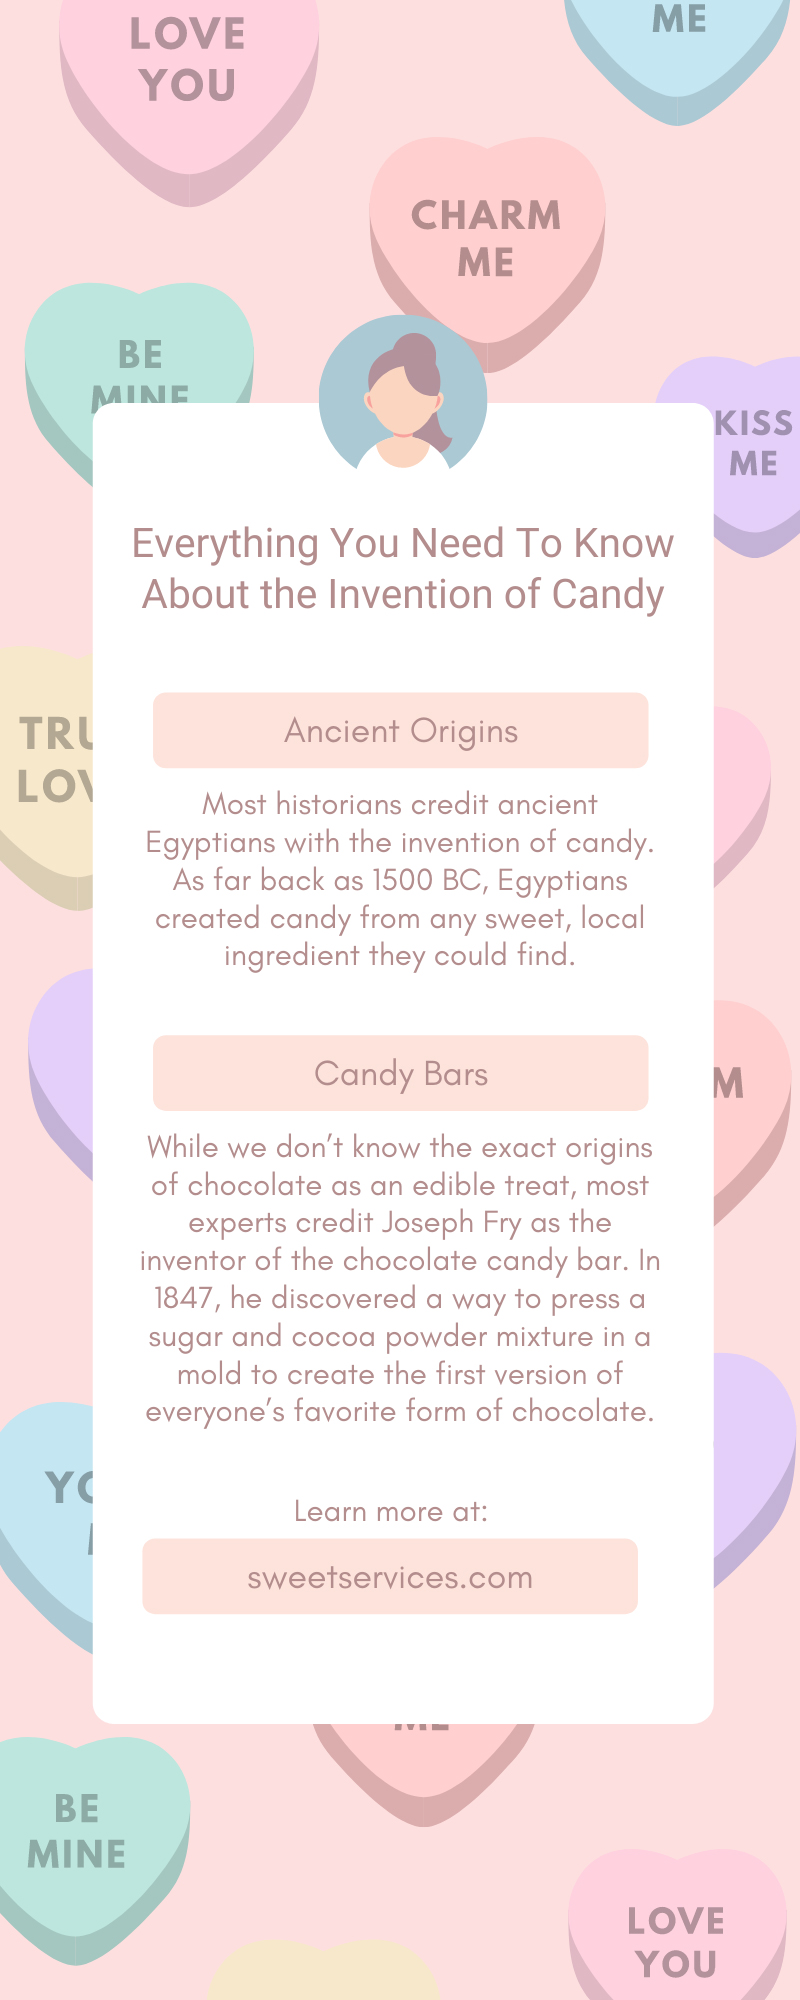 Todo lo que necesitas saber sobre la invención de los dulces